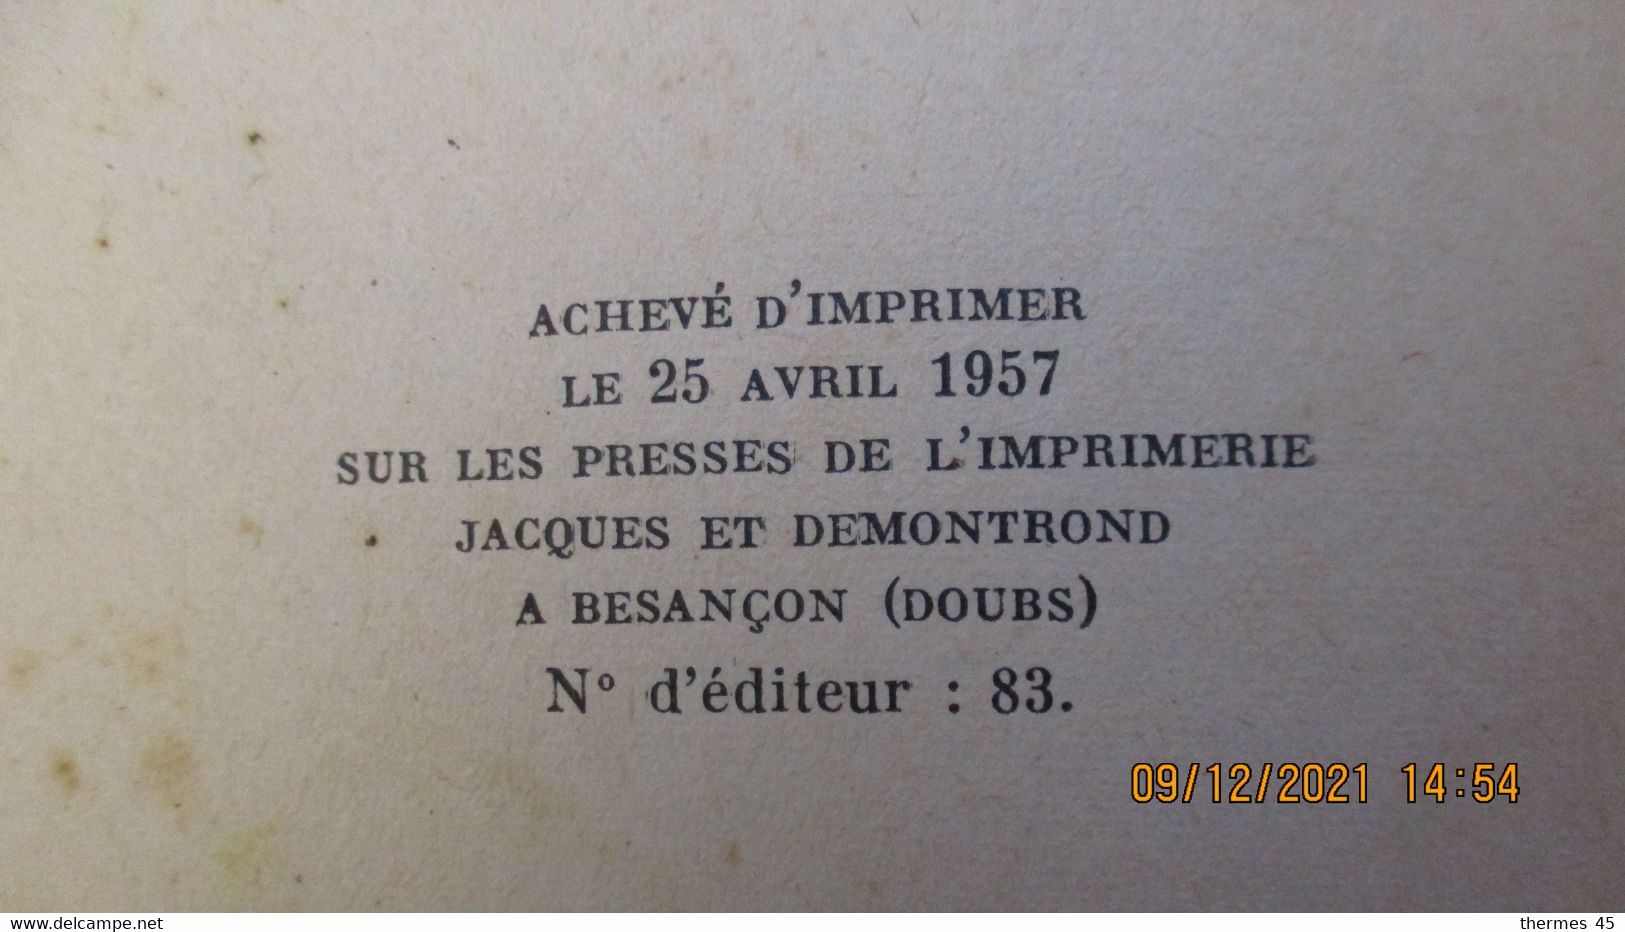 GOUVERNEUR D'OUTRE-MER / Armand ANNET (envoi) / 1957 Coll. " Mon Métier "/ Ed. du Conquistador.